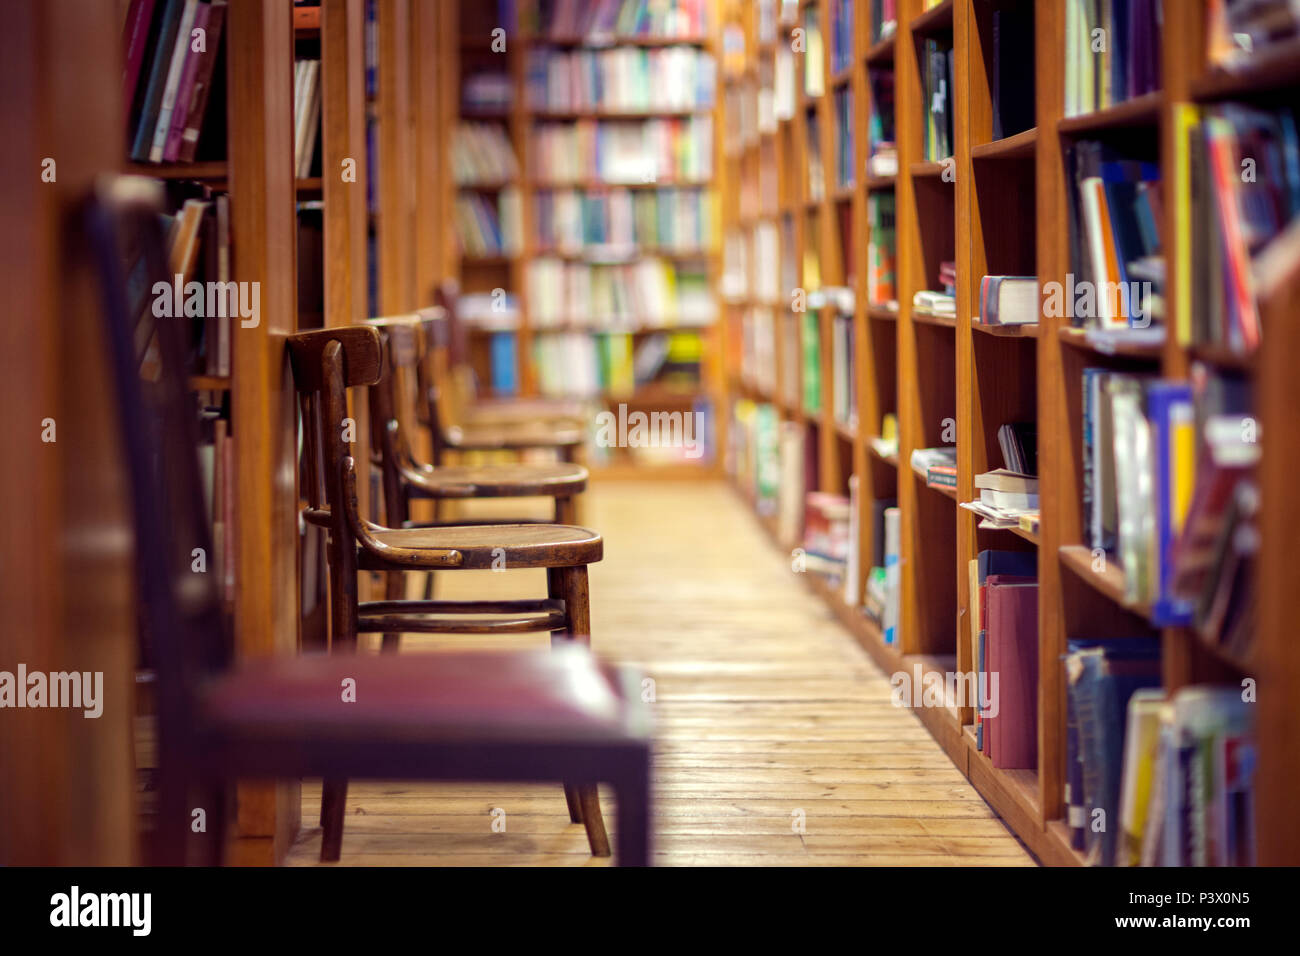 Bibliothek mit Reihen von Büchern in den Regalen und leere Stühle Stockfoto